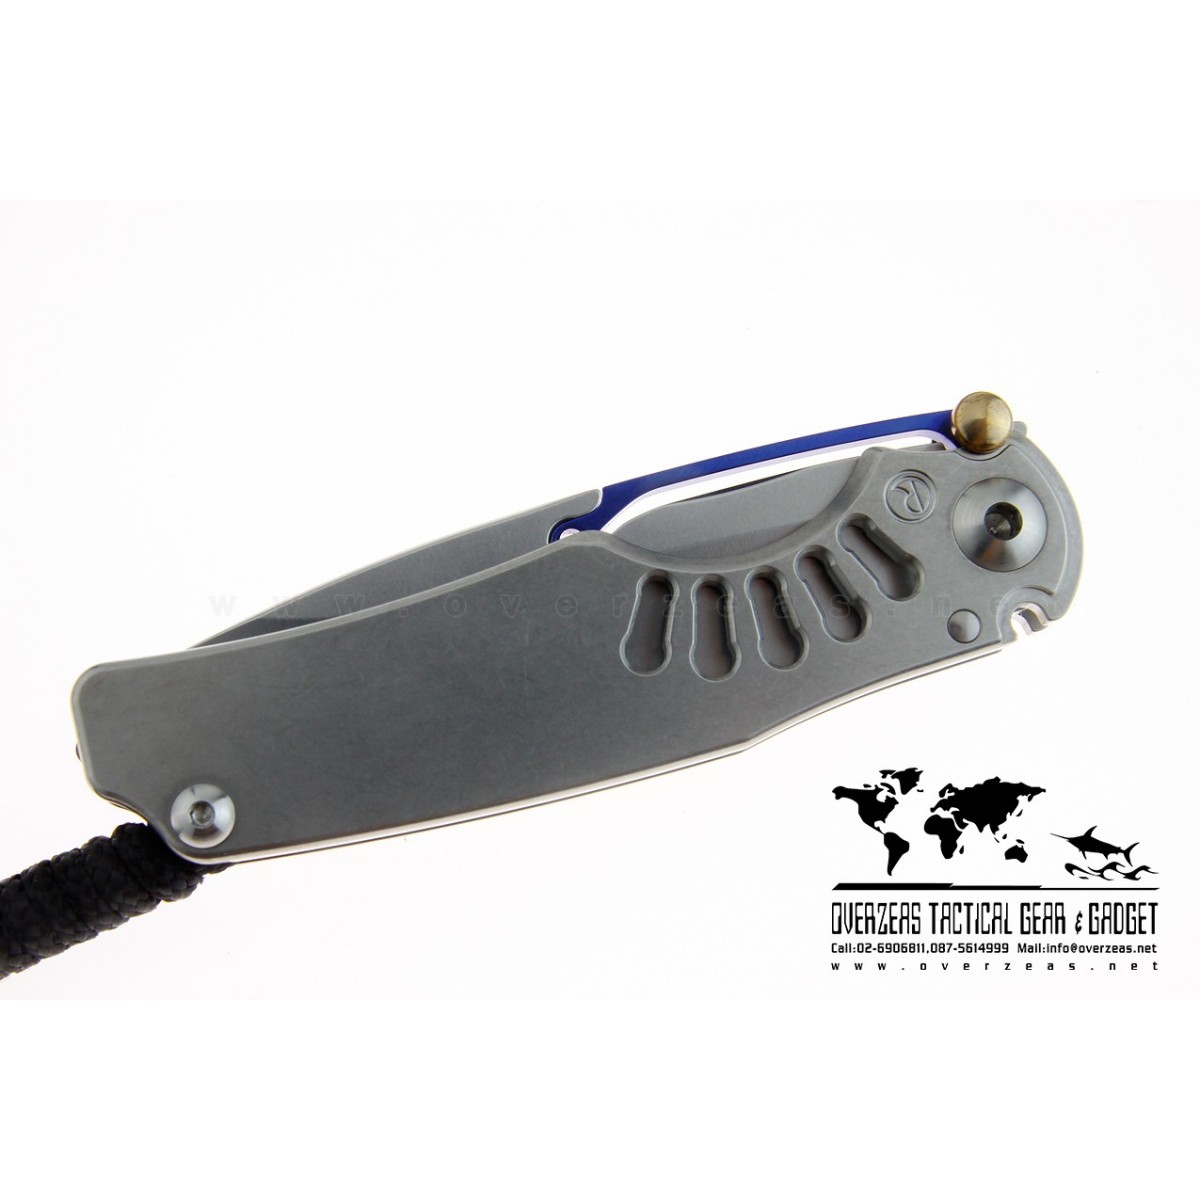 มีดพับ Chris Reeve Ti-Lock Knife Folding S35V Blade Titanium Handle (3.25" Plain)